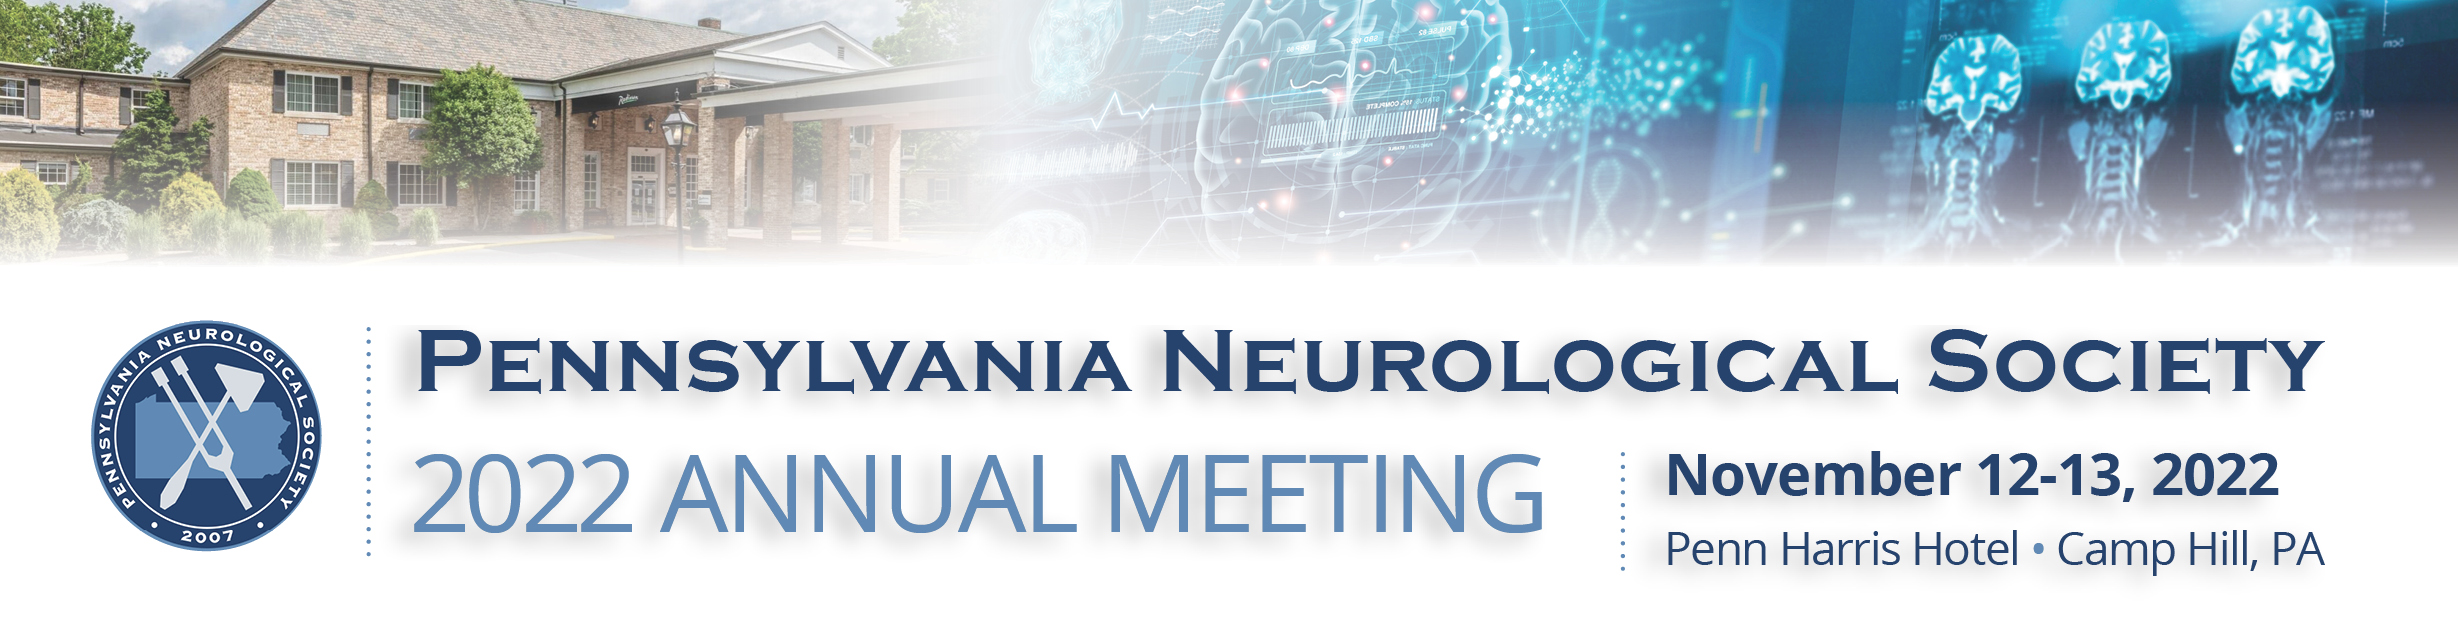 2022 Pennsylvania Neurological Society Annual Meeting